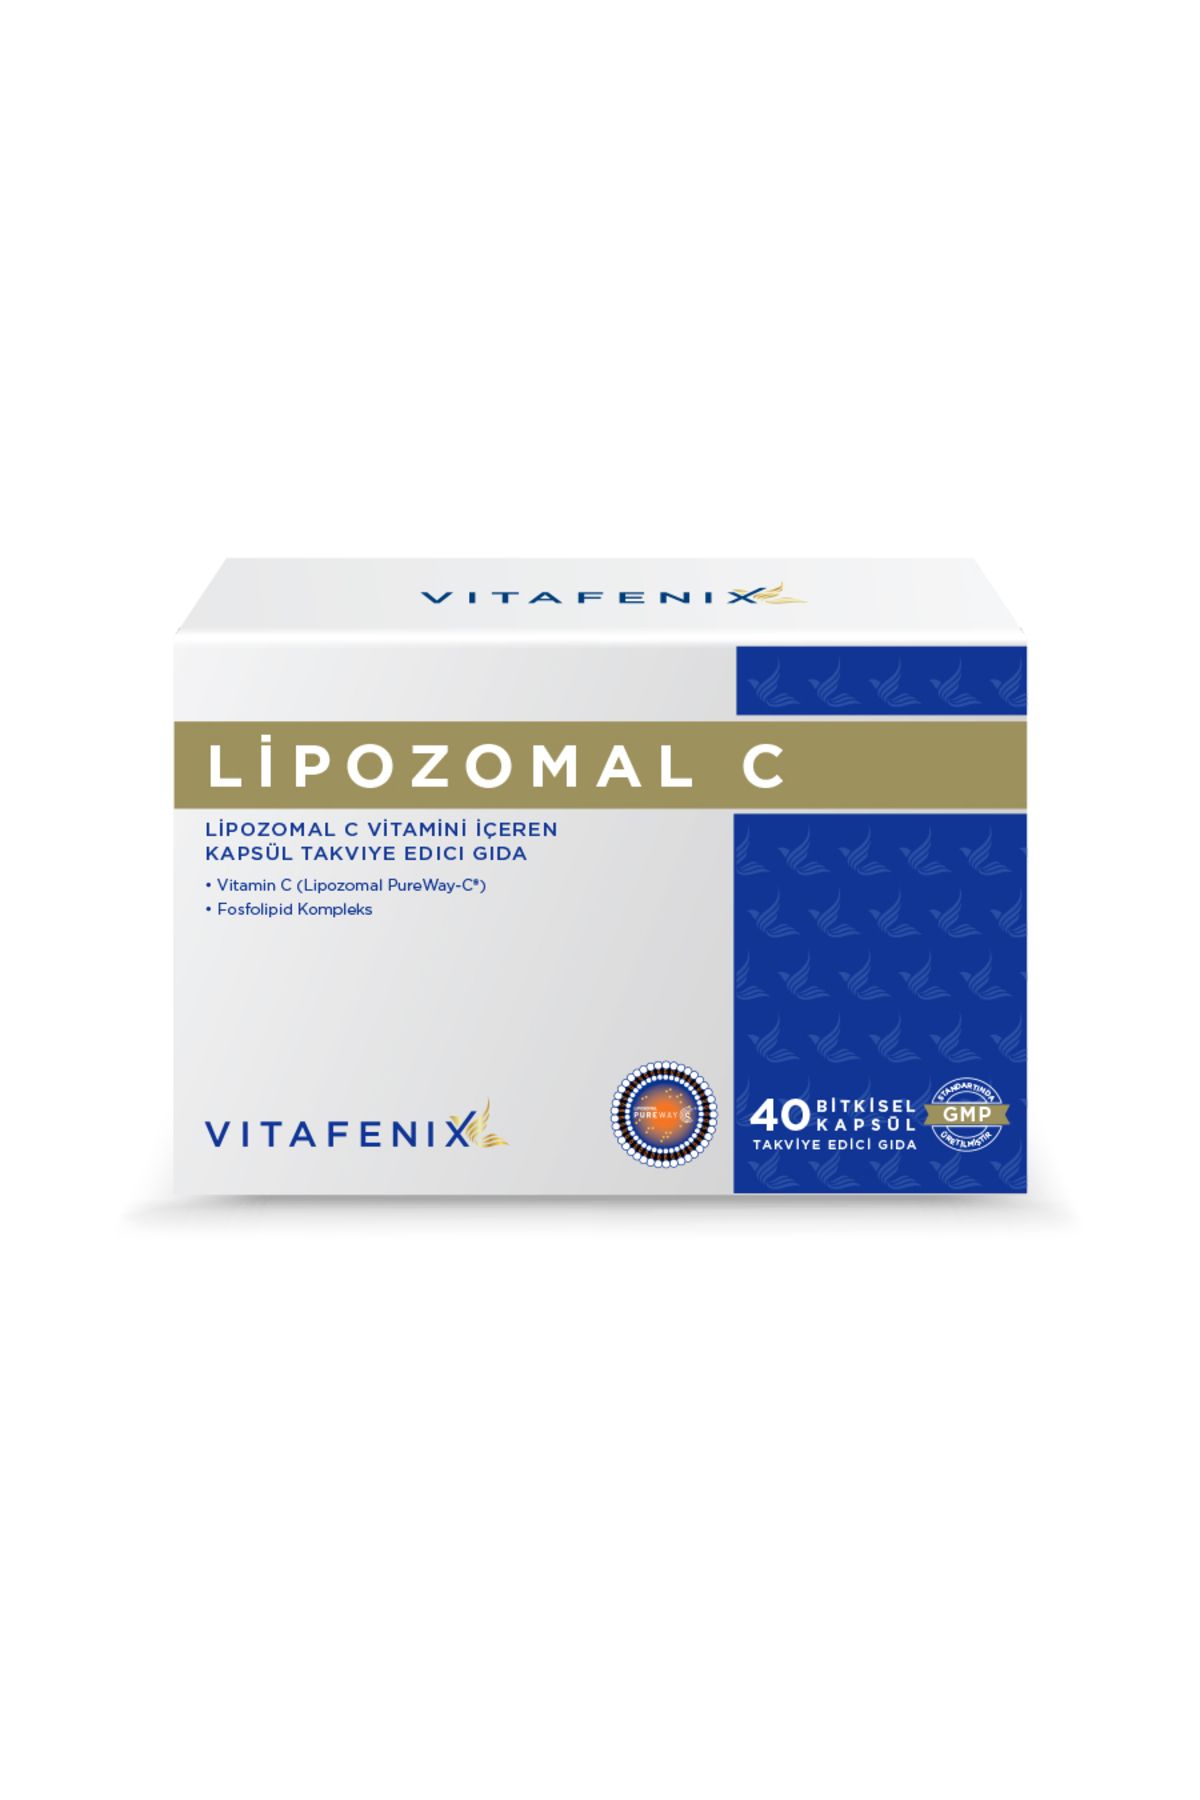 Vitafenix Lipozomal C Vitamini İçeren Takviye Edici Gıda 40 Kapsül